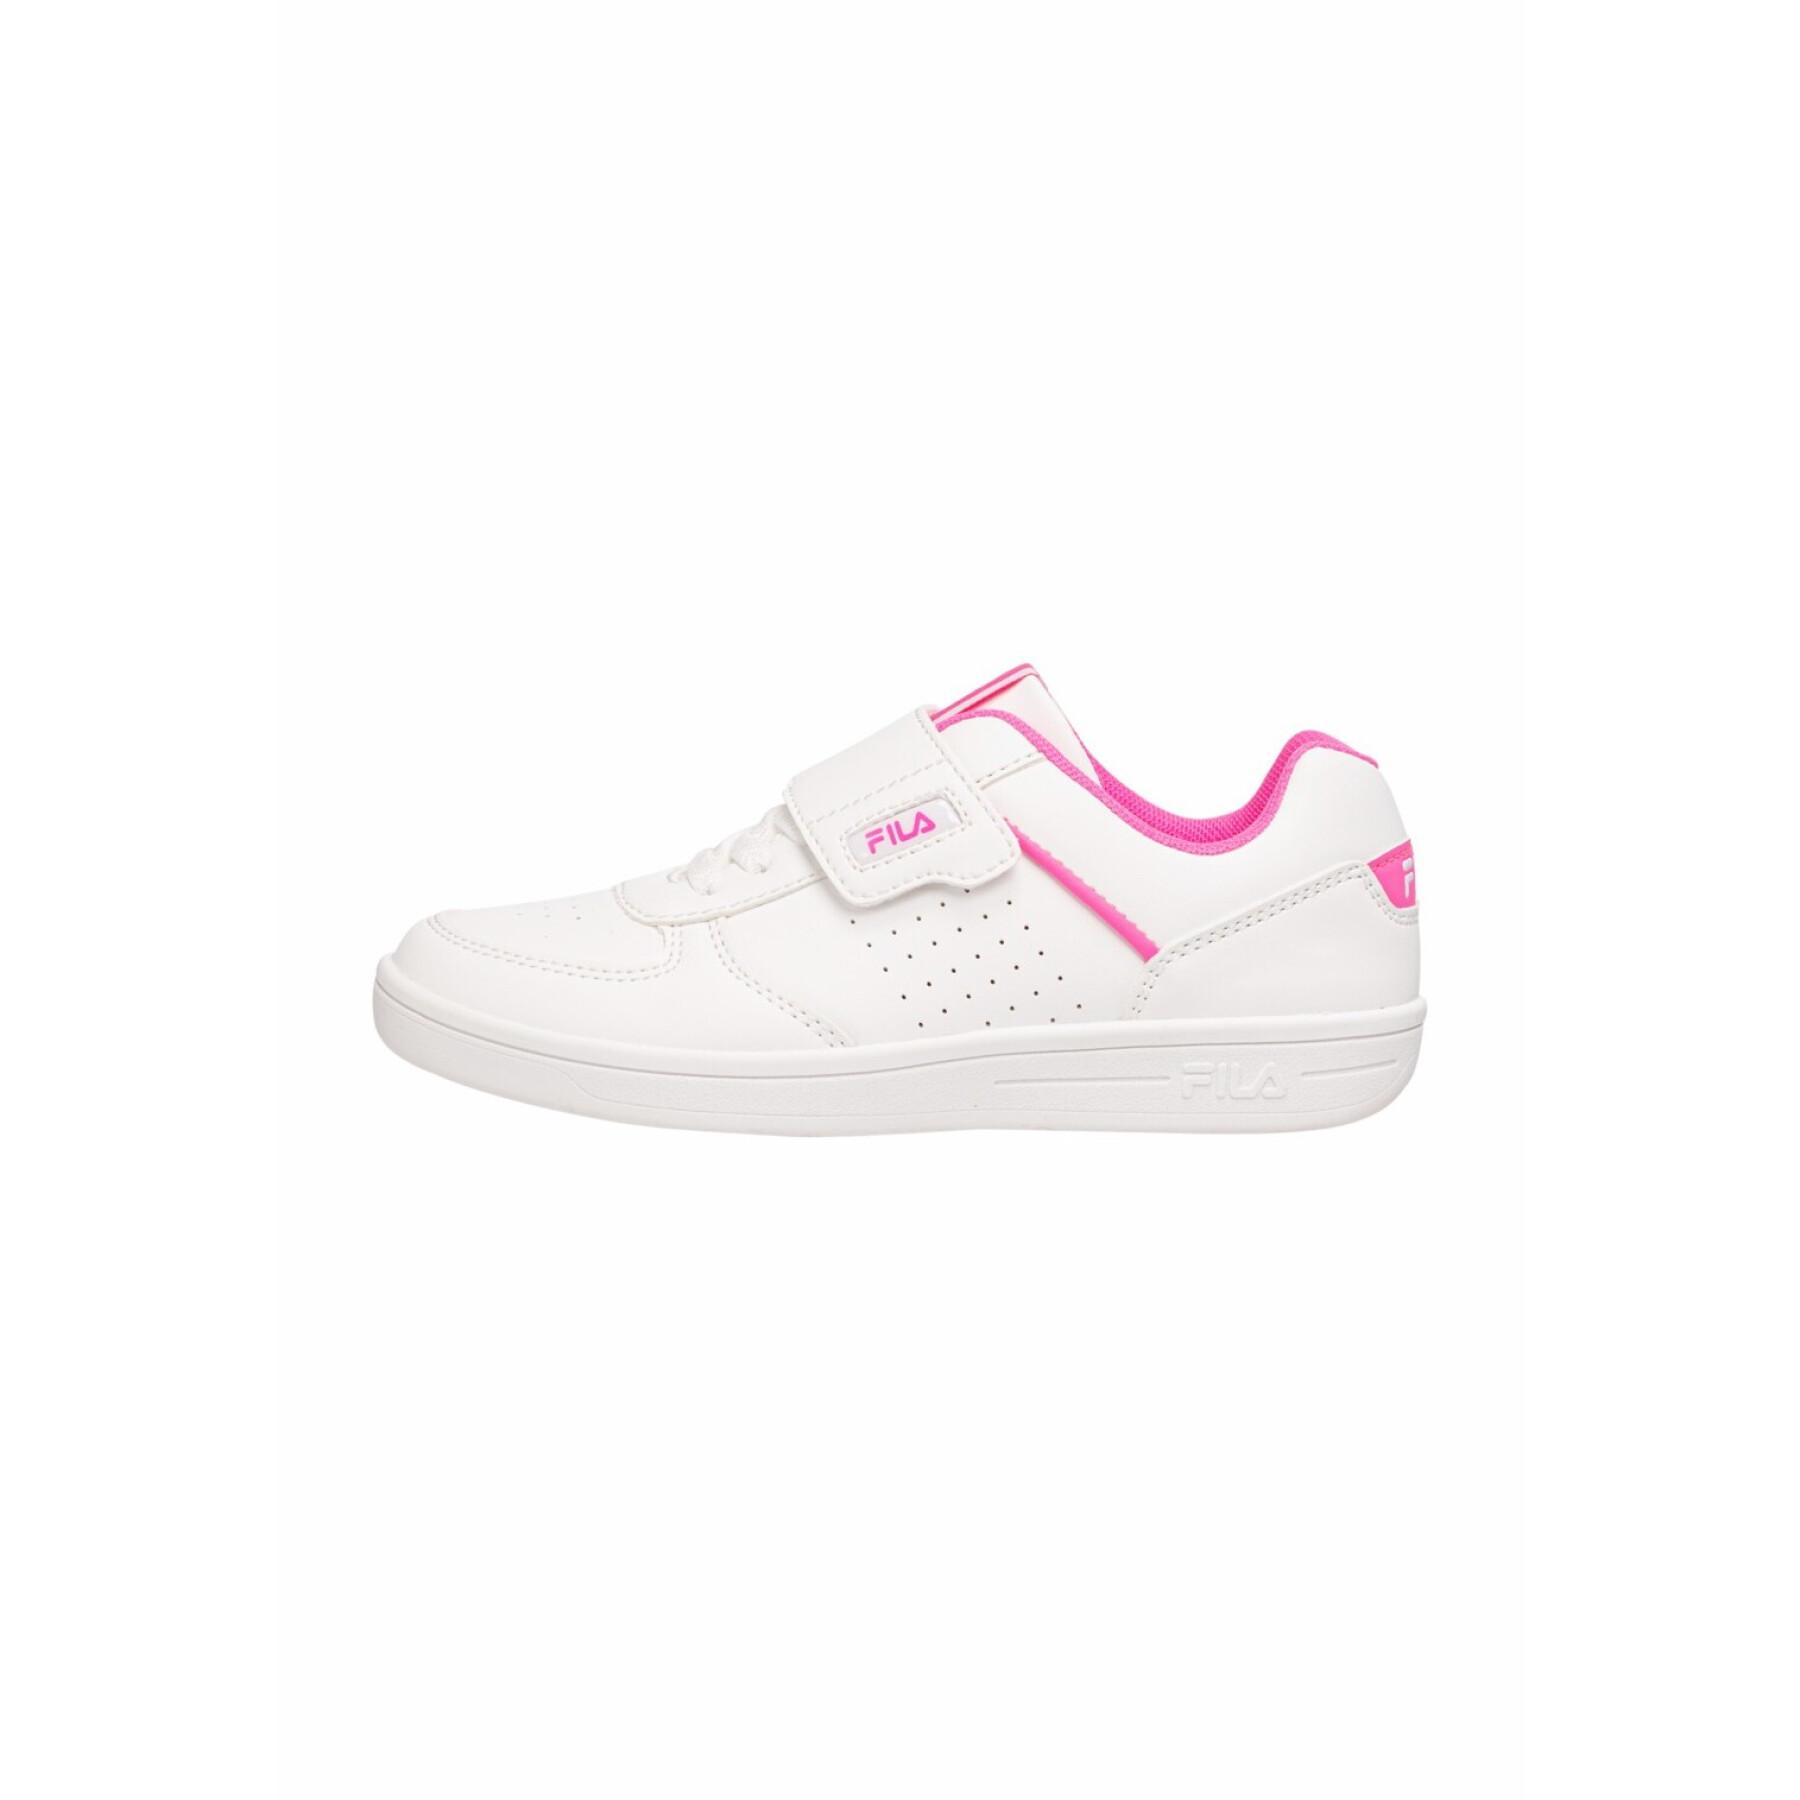 Velcro Brands Sneakers - C. Court sneakers Fila Children\'s -